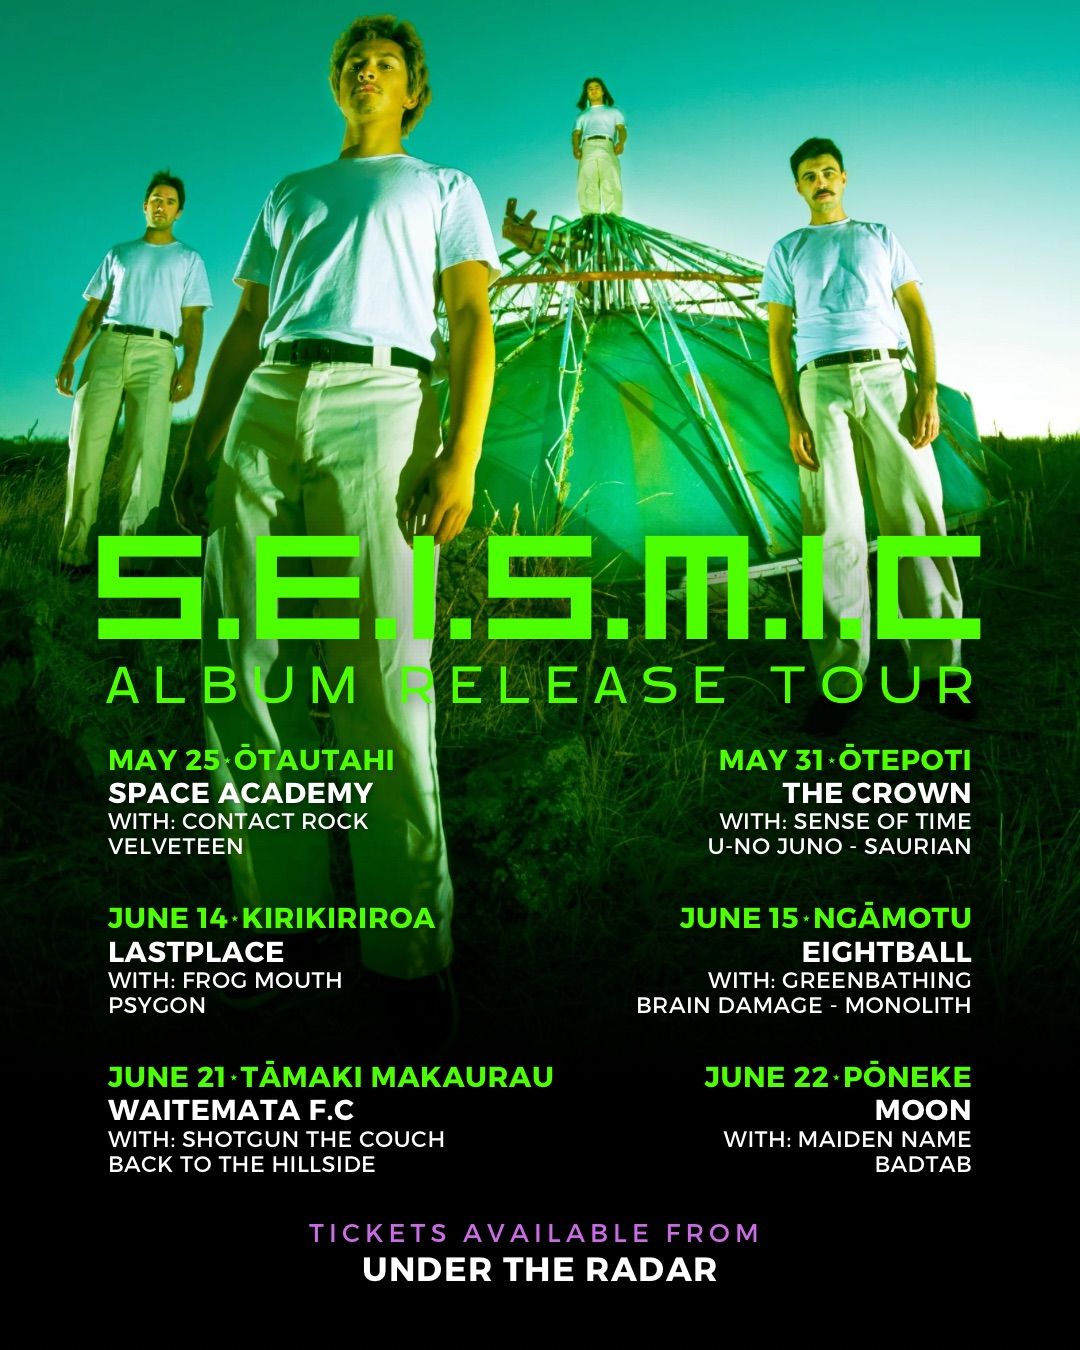 S.E.I.S.M.I.C Album Release Tour - Last Place